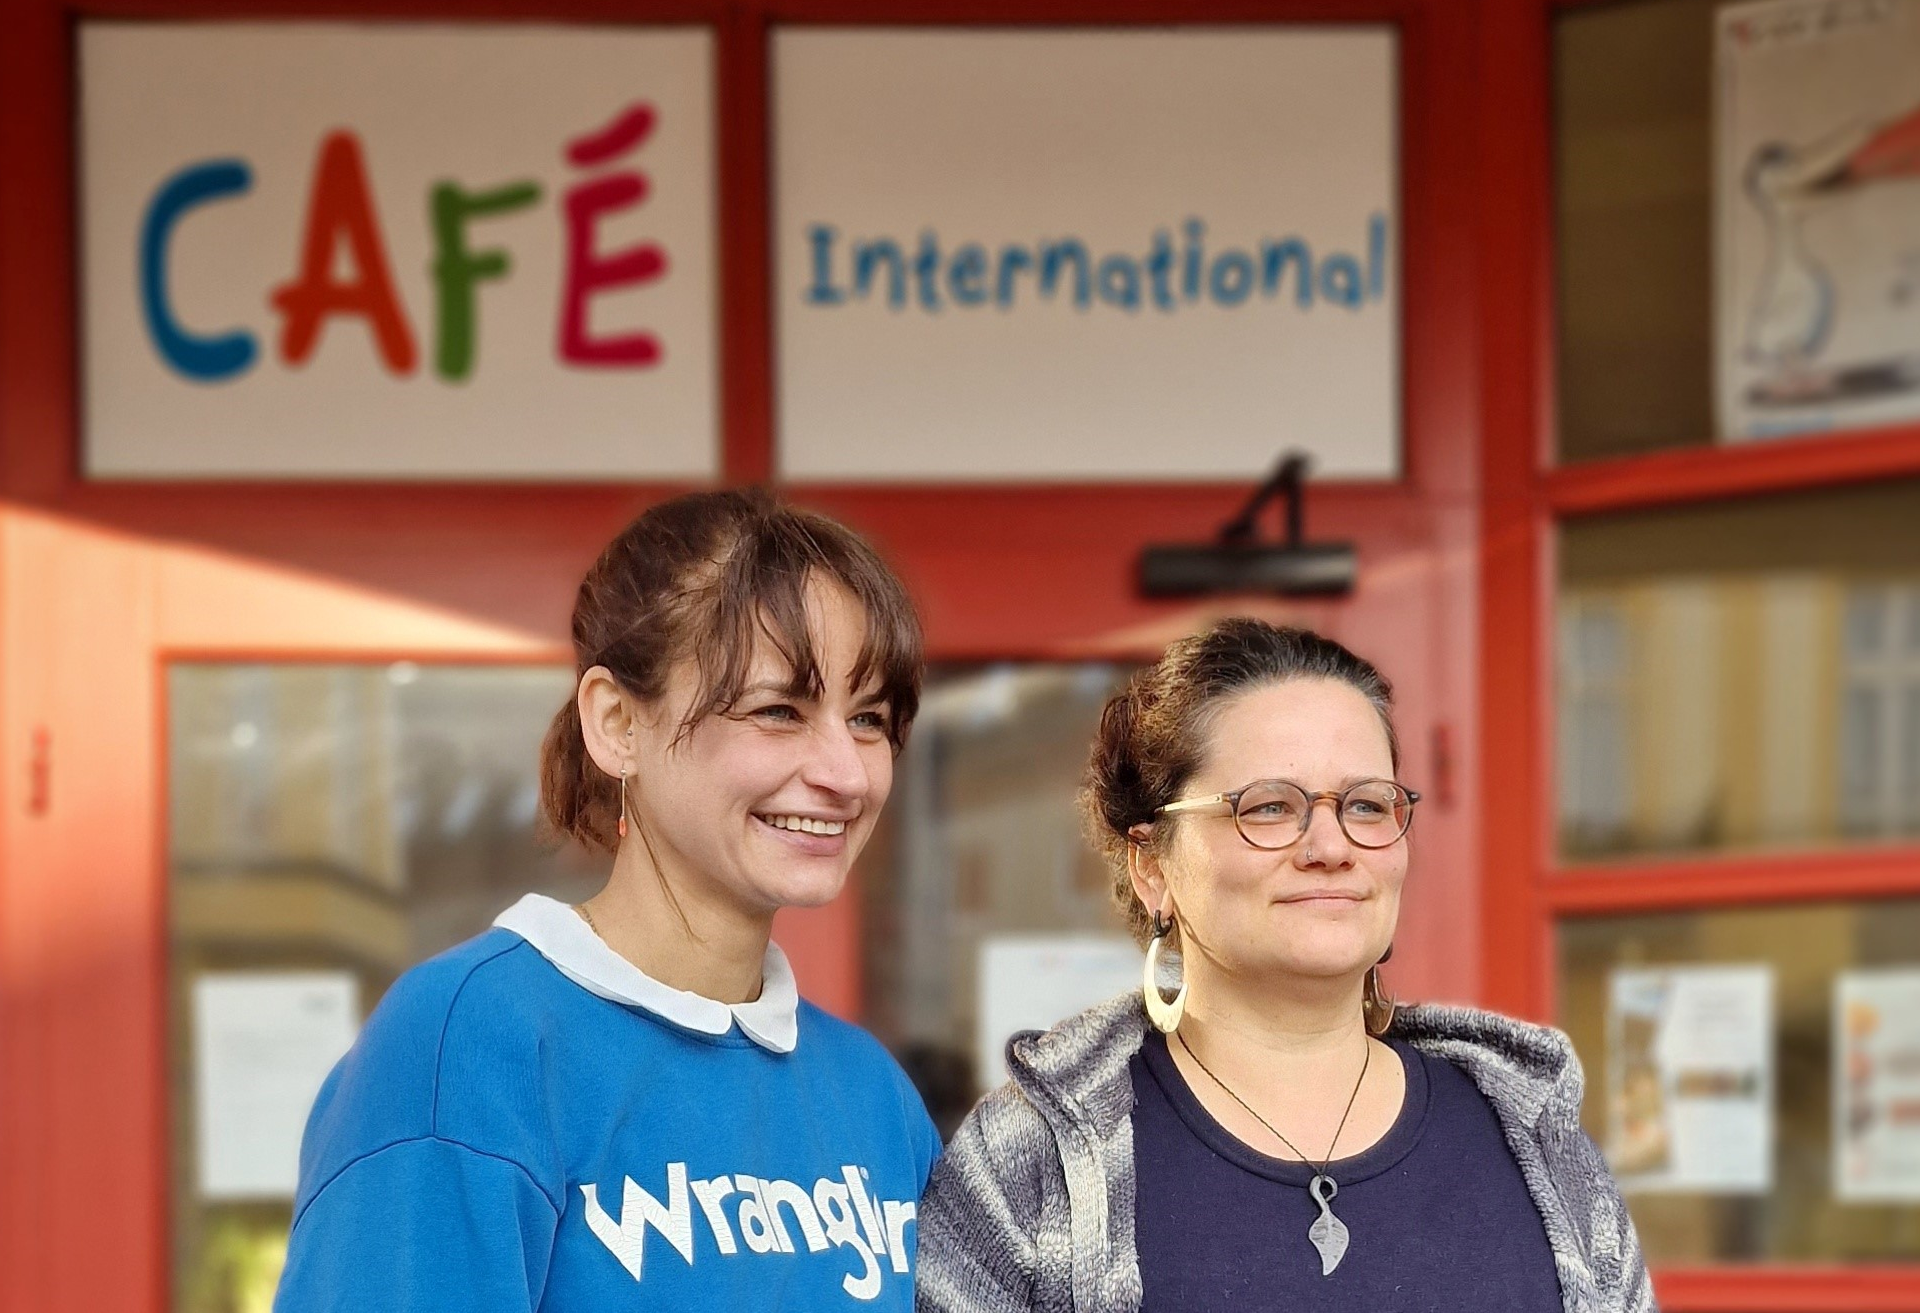 Teamleiterin Marie Ortmann und Migrationsberaterin Michelle Ruthenberg stehen lächelnd vor dem Eingang des Cafés  mit dem bunten Schriftzug "Café International"